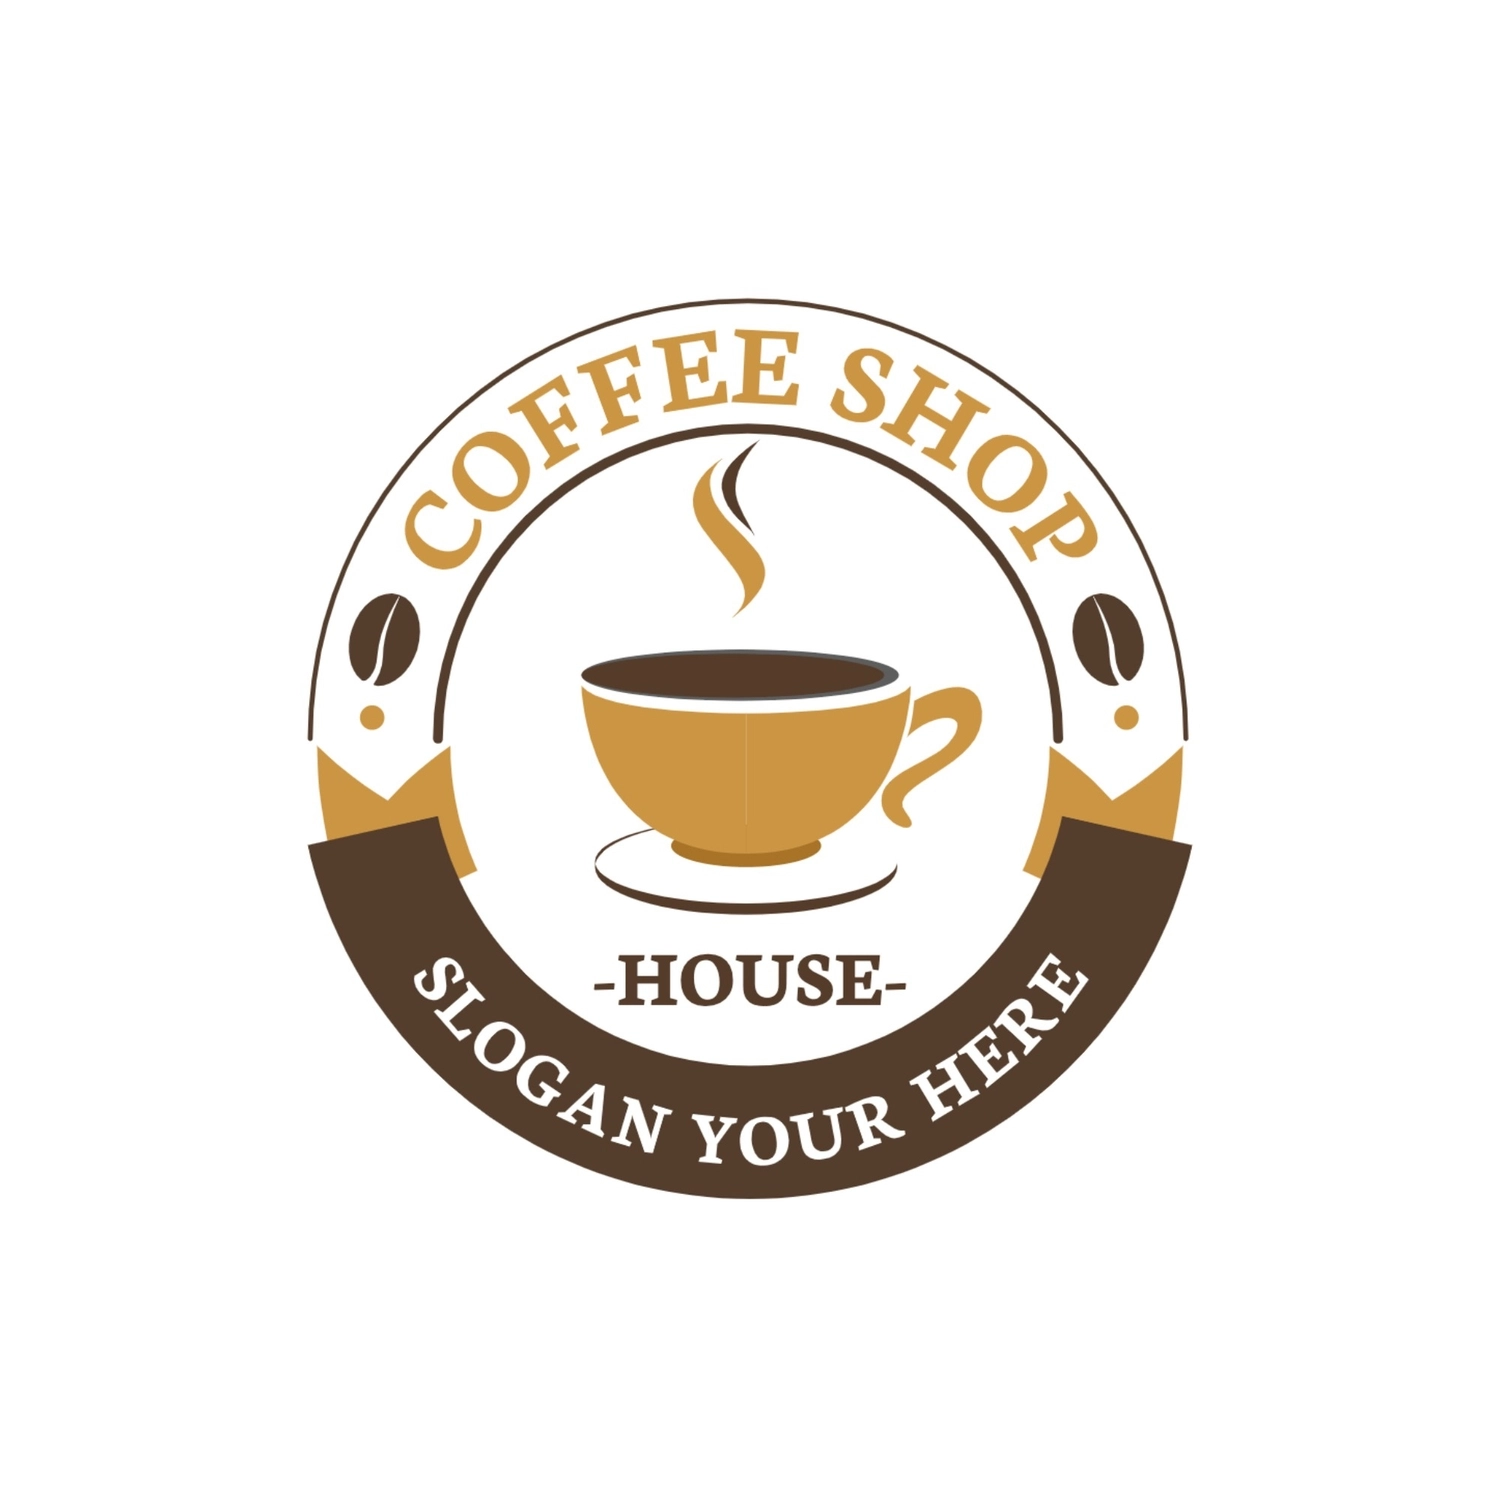 コーヒーショップのロゴ, ベージュ, 作成, デザイン, ロゴテンプレート